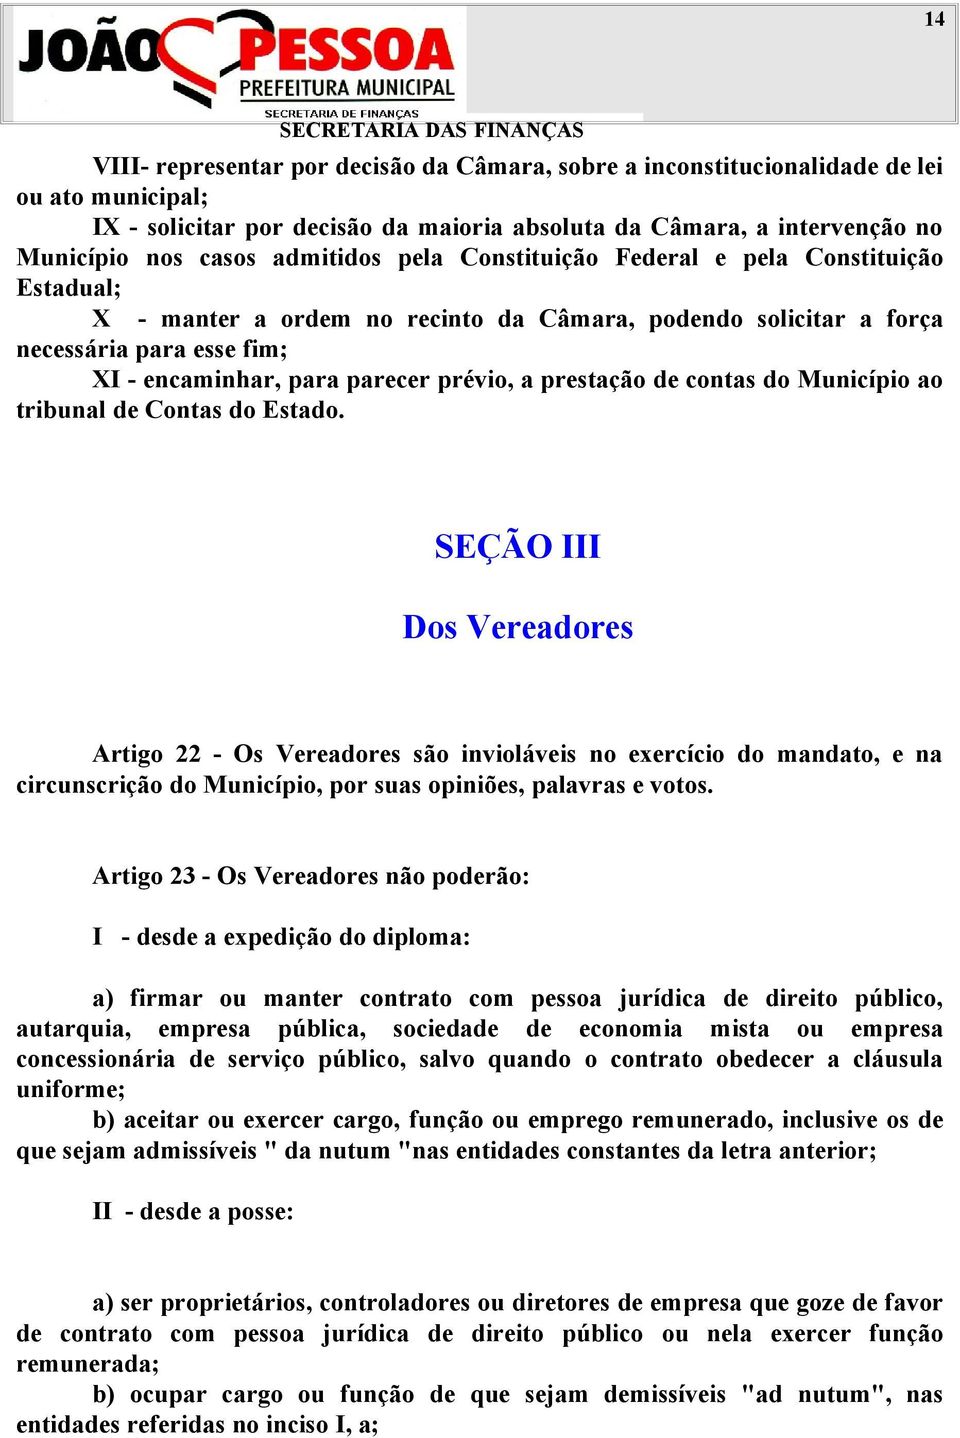 prestação de contas do Município ao tribunal de Contas do Estado.